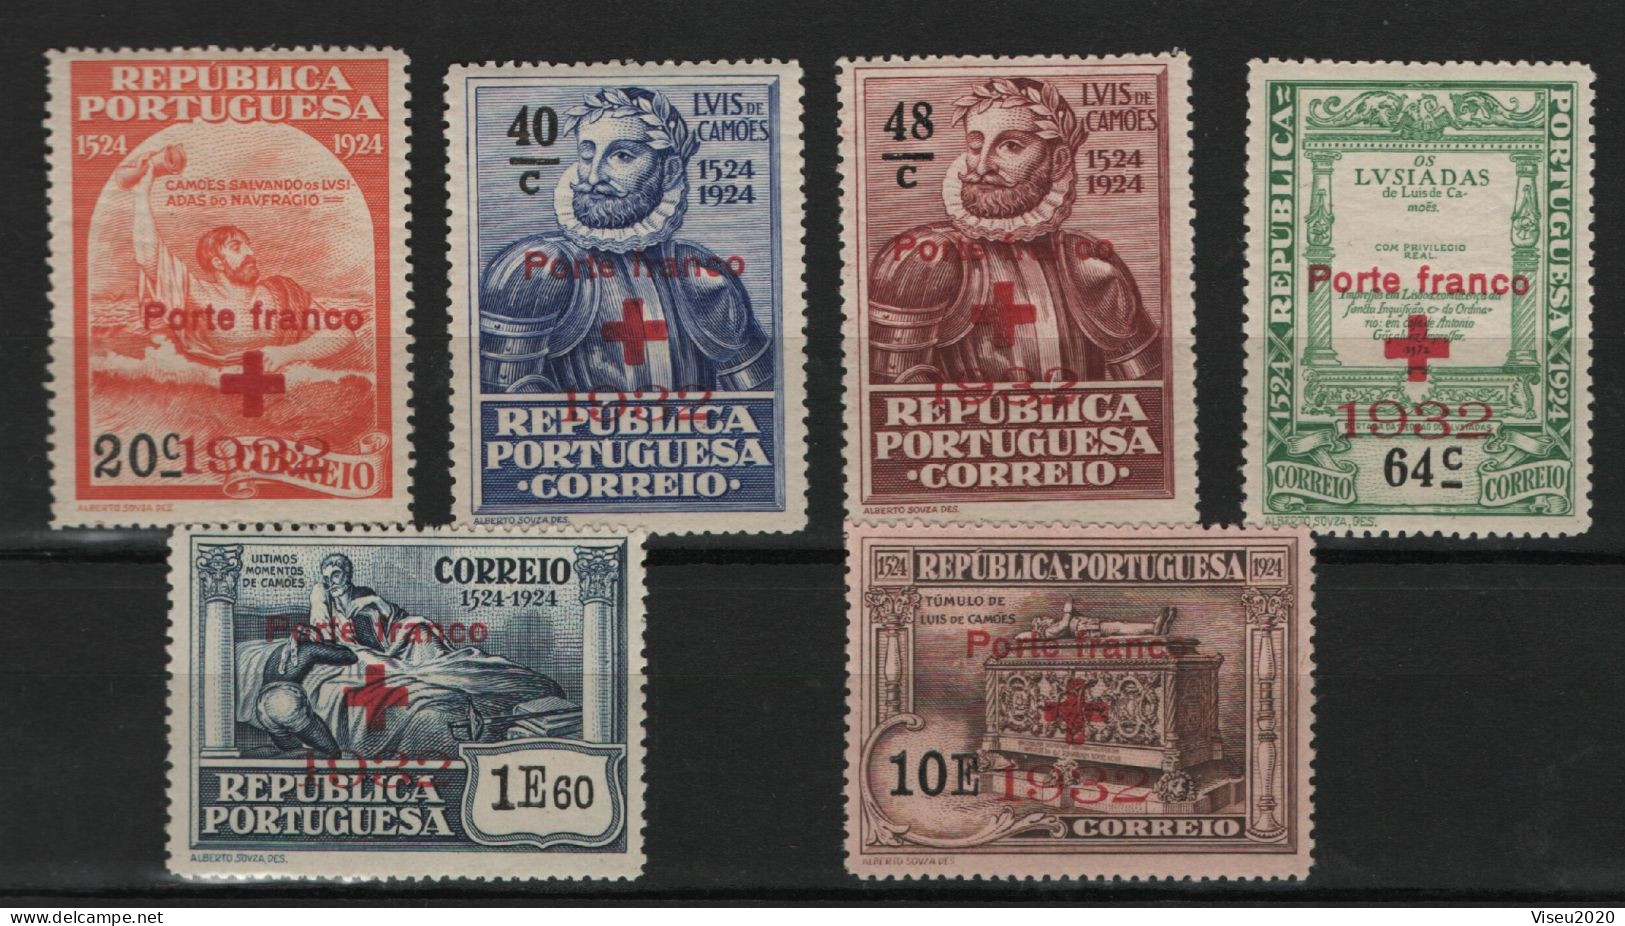 Portugal Porte Franco 1932 - Selos Do 4º Centenário Do Nascimento De Luís De Camões (1924) OVP - Set Completo - Neufs